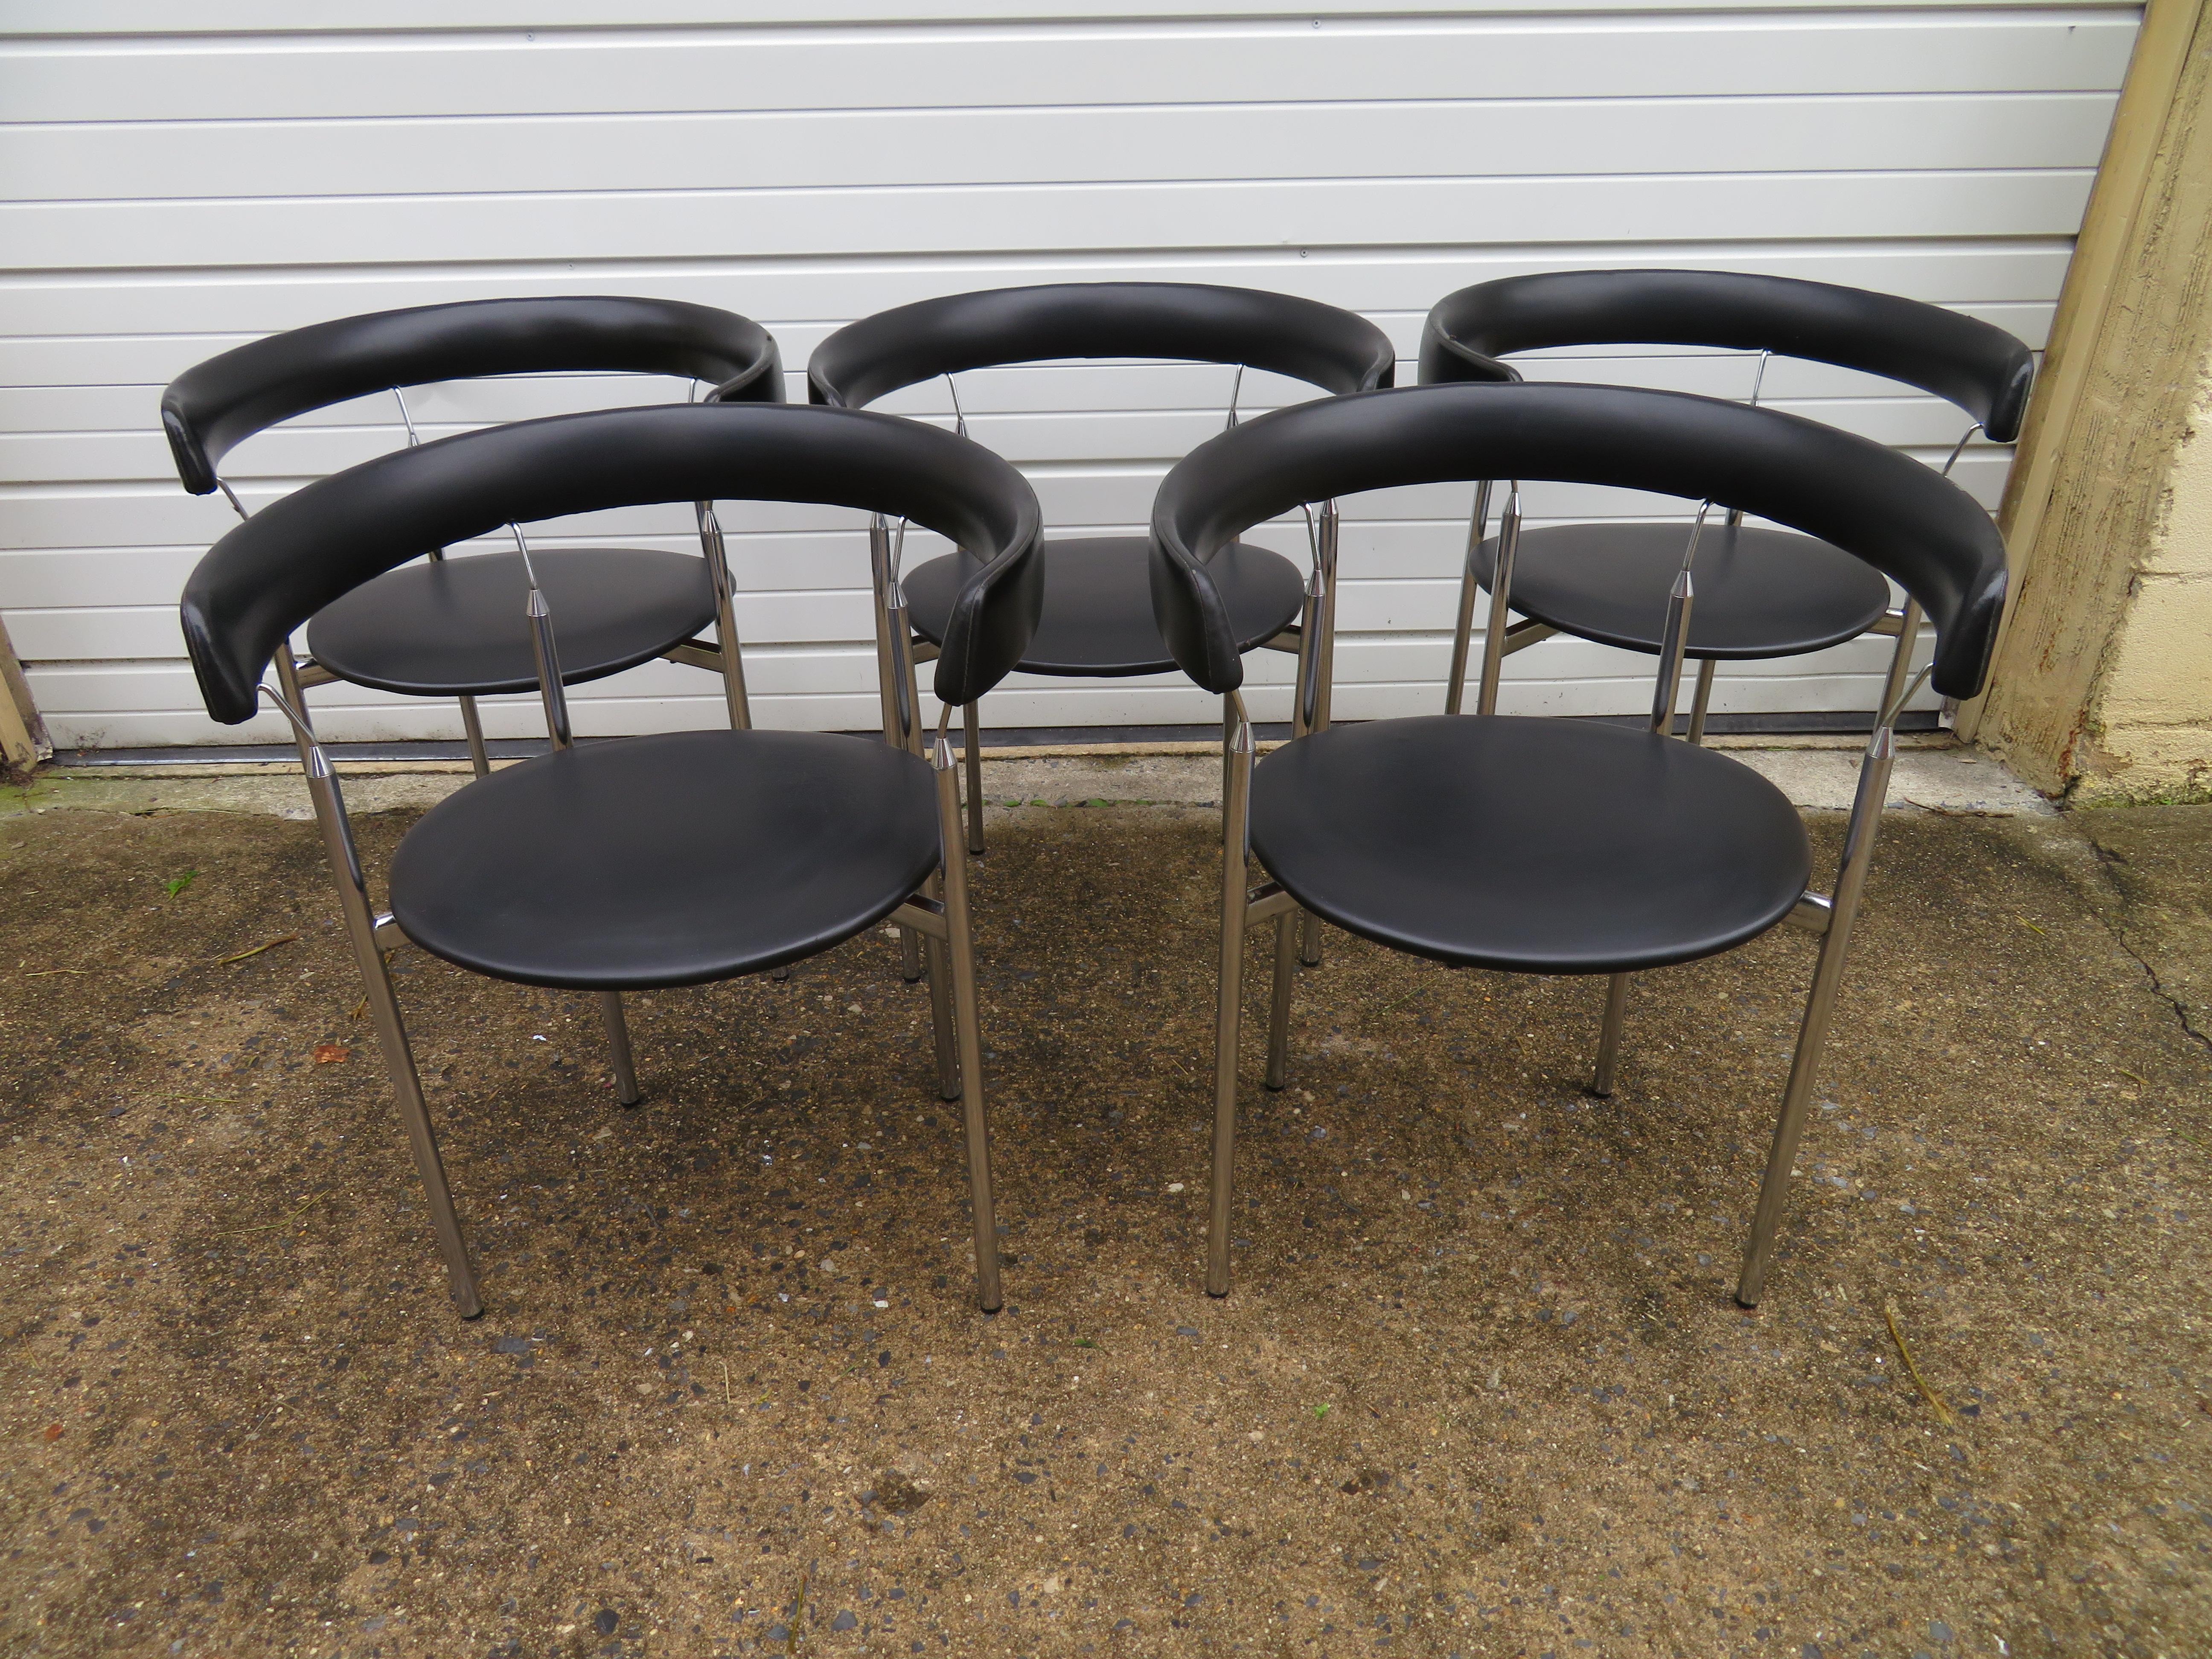 Merveilleux ensemble de cinq chaises de salle à manger à dossier baril de style Poul Kjaerholm avec leur table de salle à manger originale à base de tambour ébonisé. Les chaises ont conservé leur similicuir noir d'origine dans un bel état vintage,